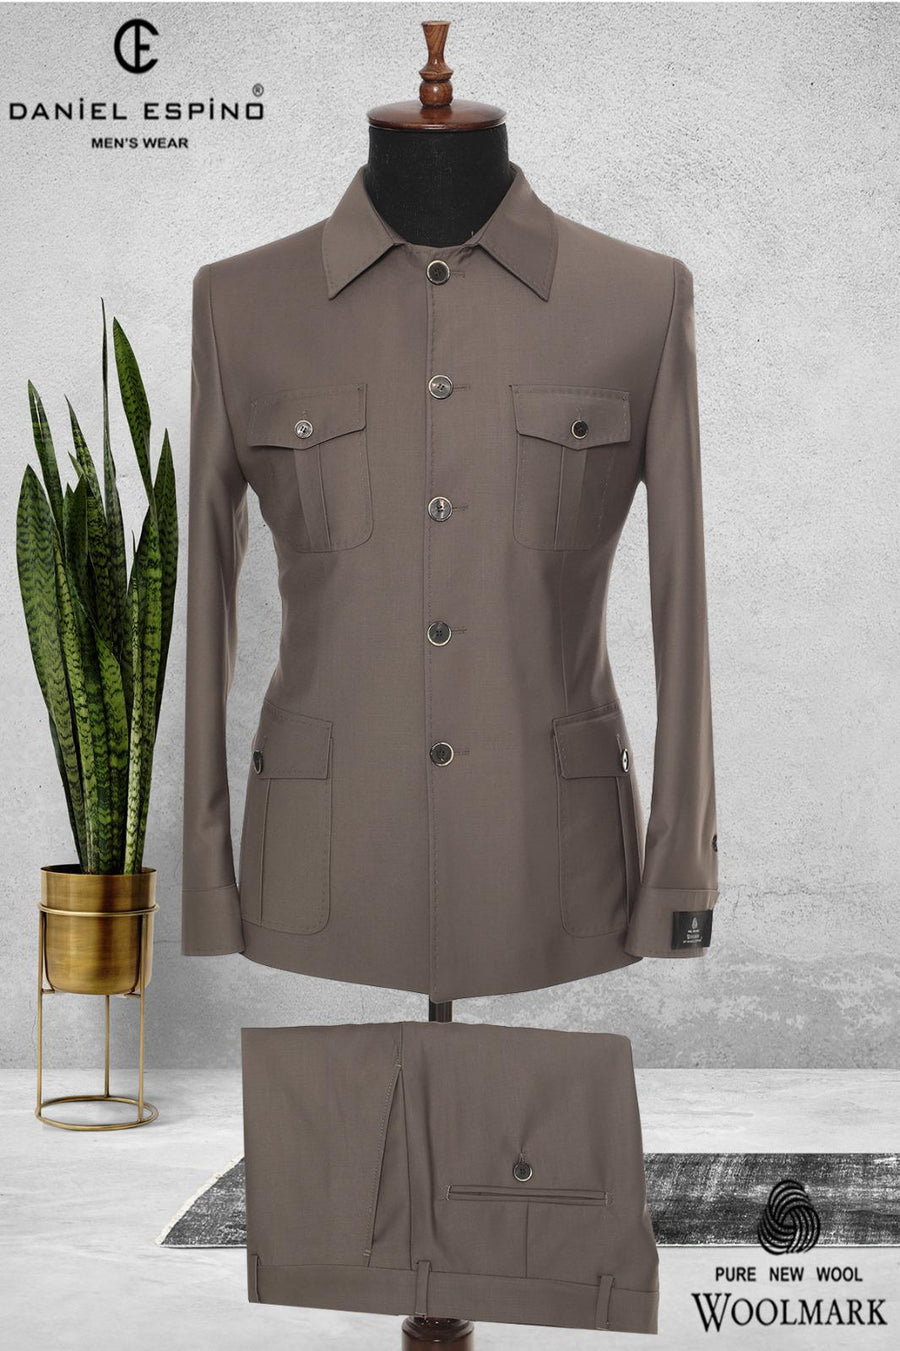 Corporate Workwear Online | Safari Suit | Corporate Uniform Shop